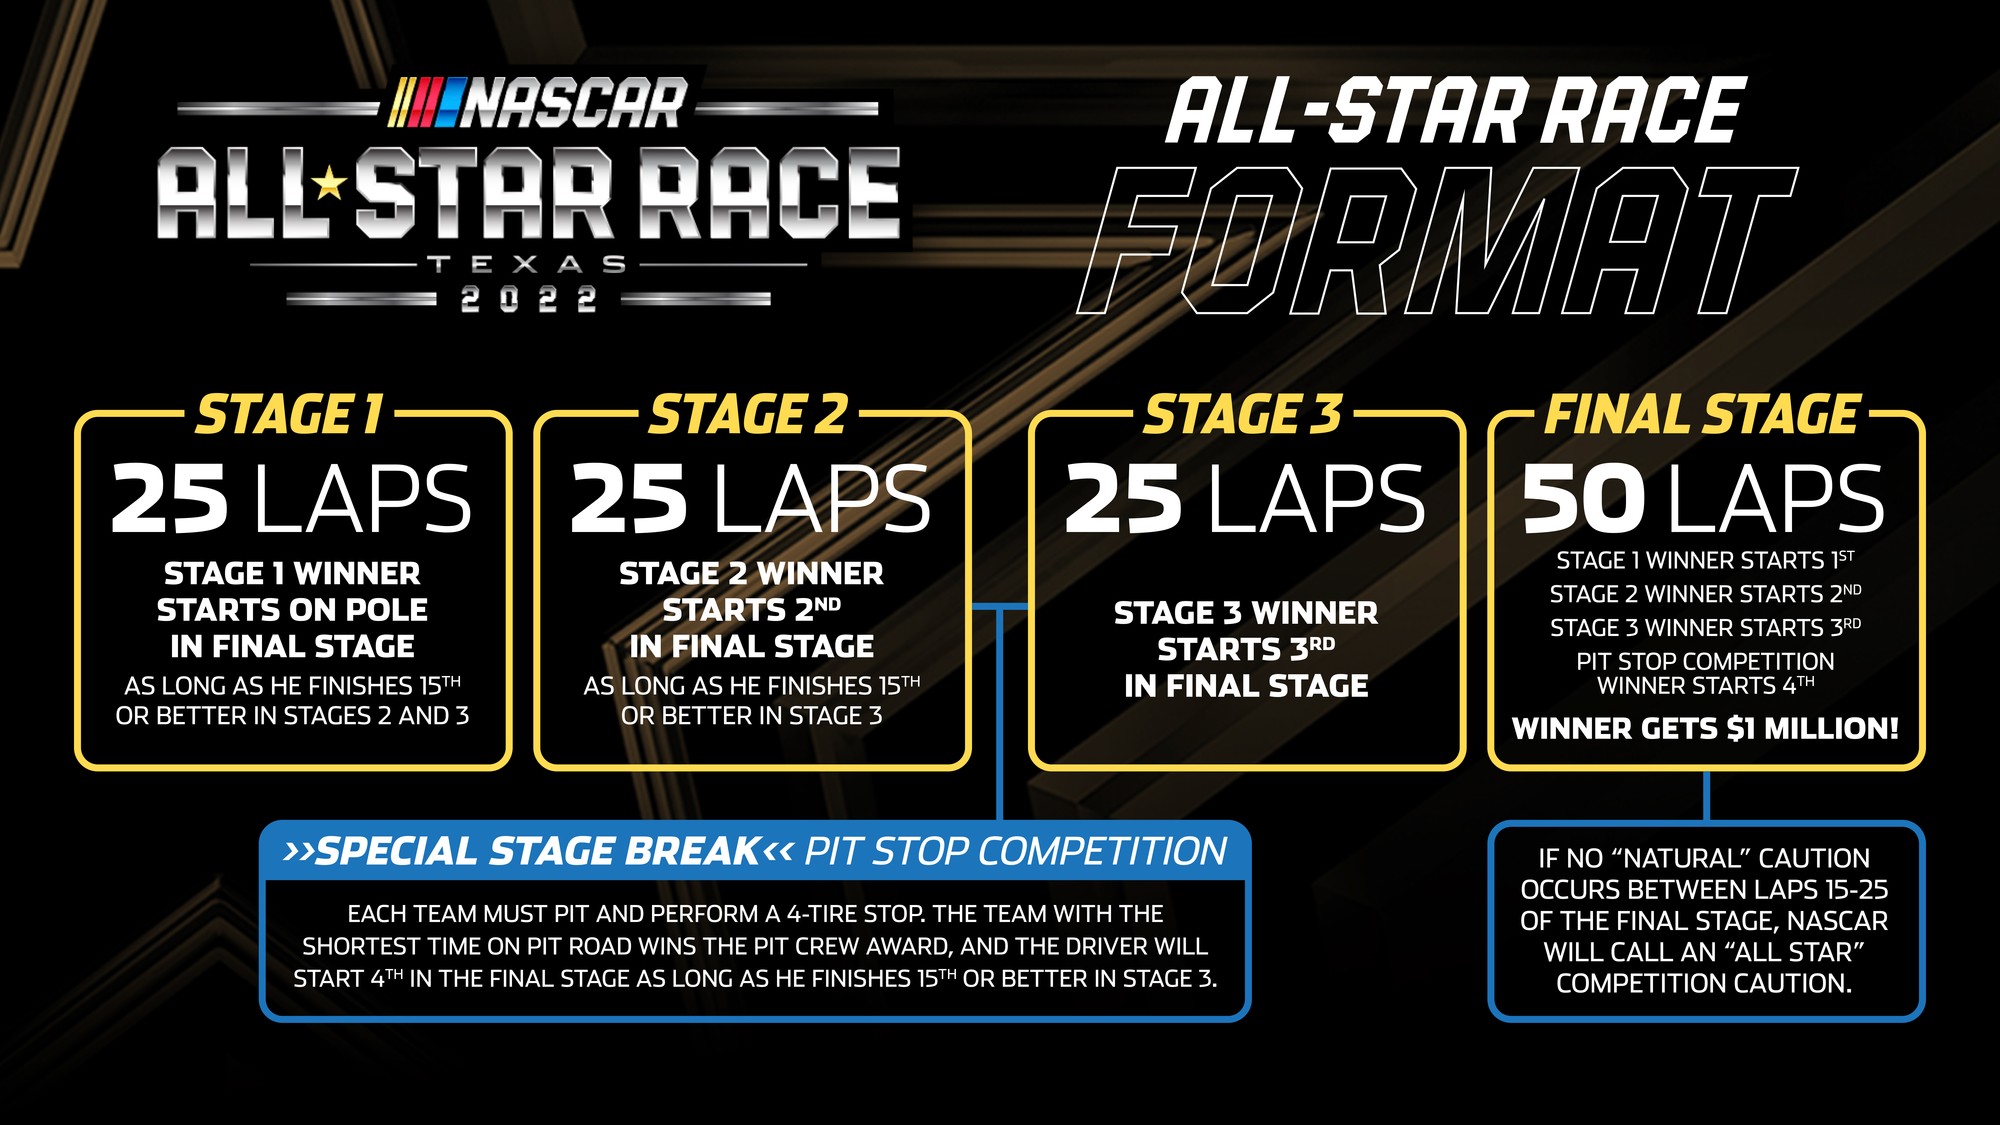 NASCAR AllStar Race Format Texas Motor Speedway